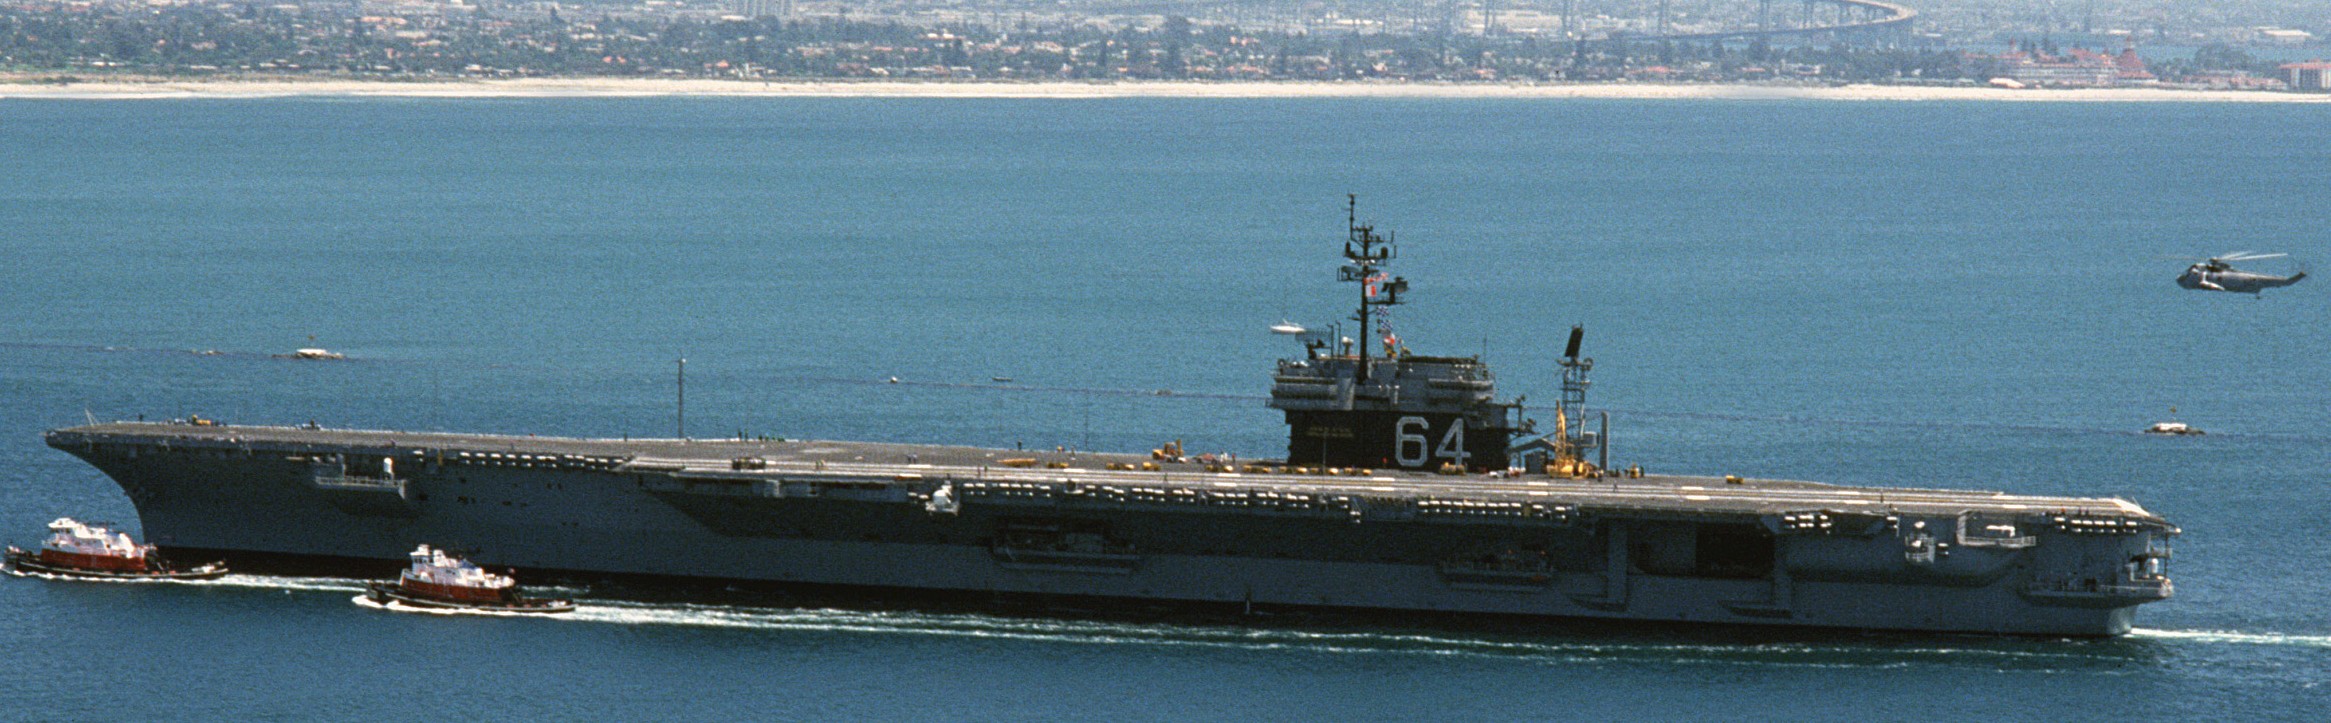 cv-64 uss constellation kitty hawk class aircraft carrier us navy 90